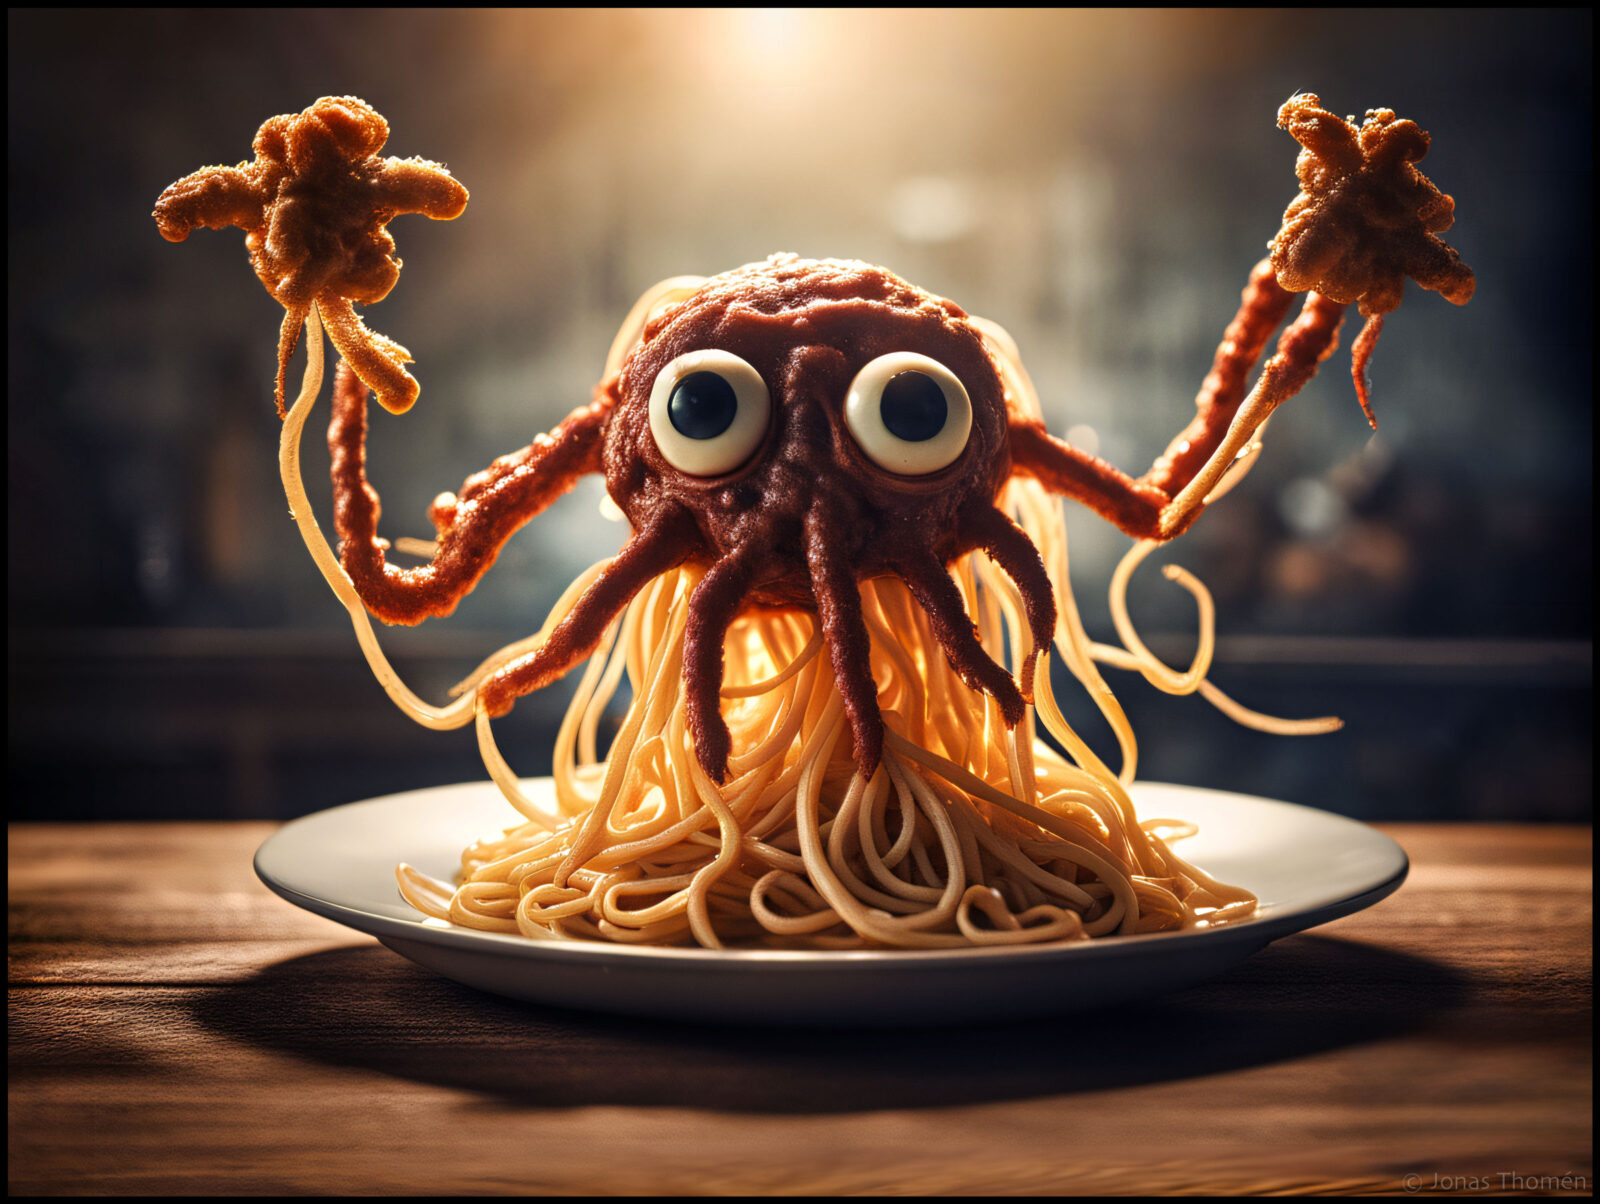 Spahettimonstret (the spaghetti monster)